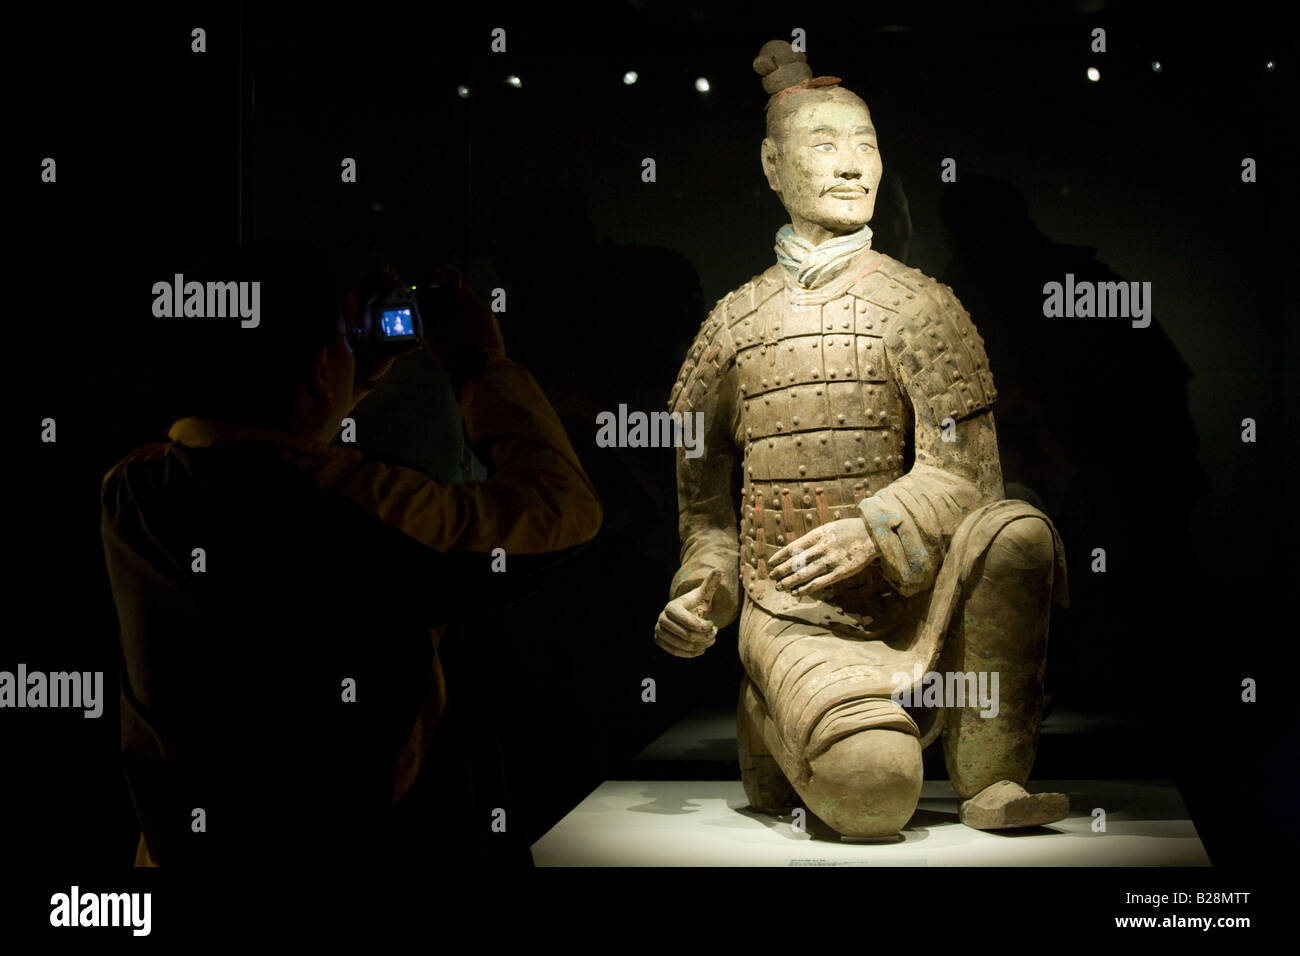 Archer à genoux trois couleurs de terre cuite sur l'affichage dans le musée d'histoire de Shaanxi Xian Chine Banque D'Images